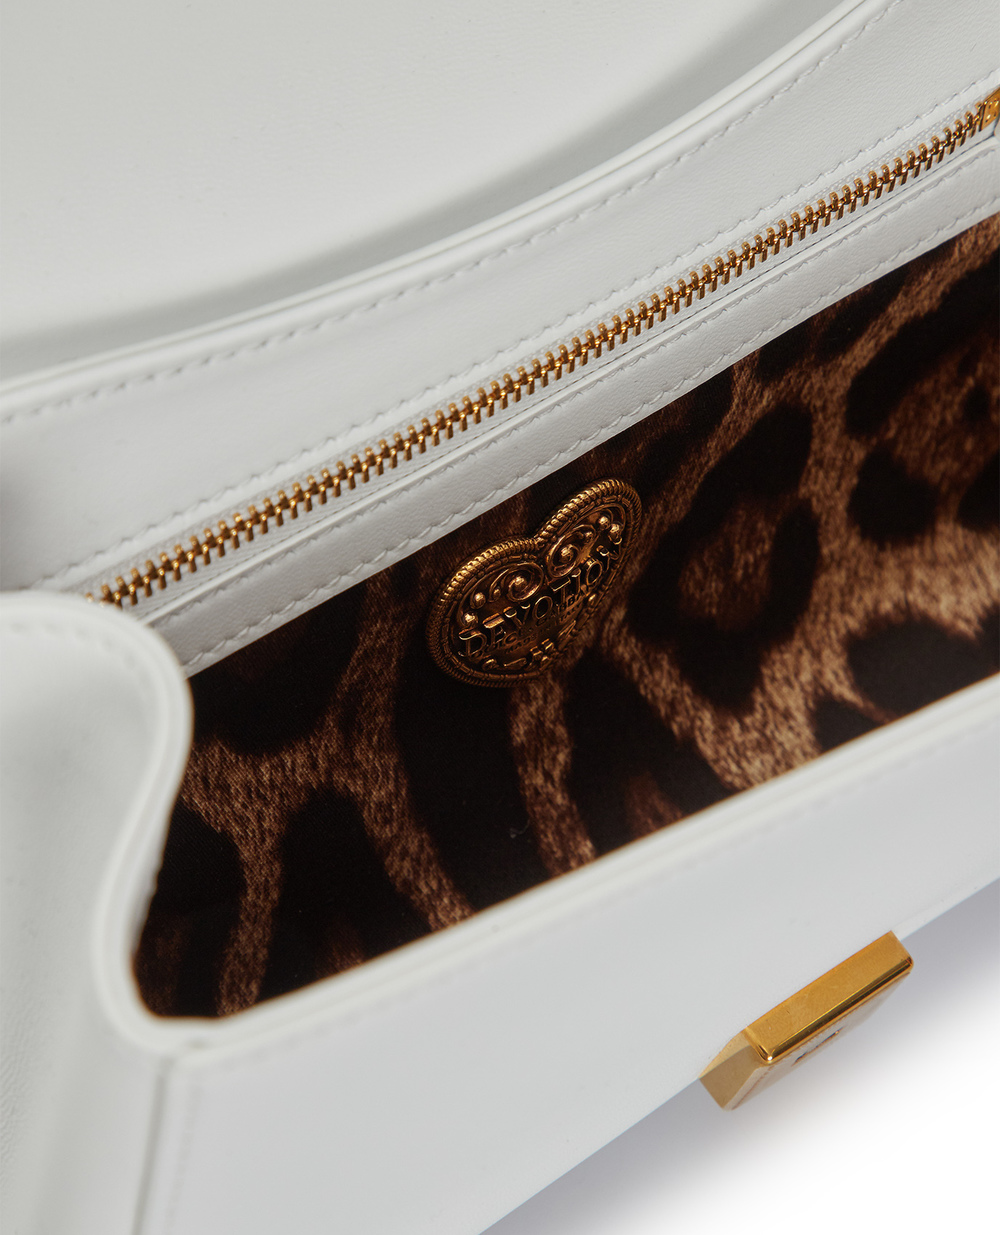 Кожаная сумка Devotion Medium Dolce&Gabbana BB7158-AW437, белый цвет • Купить в интернет-магазине Kameron